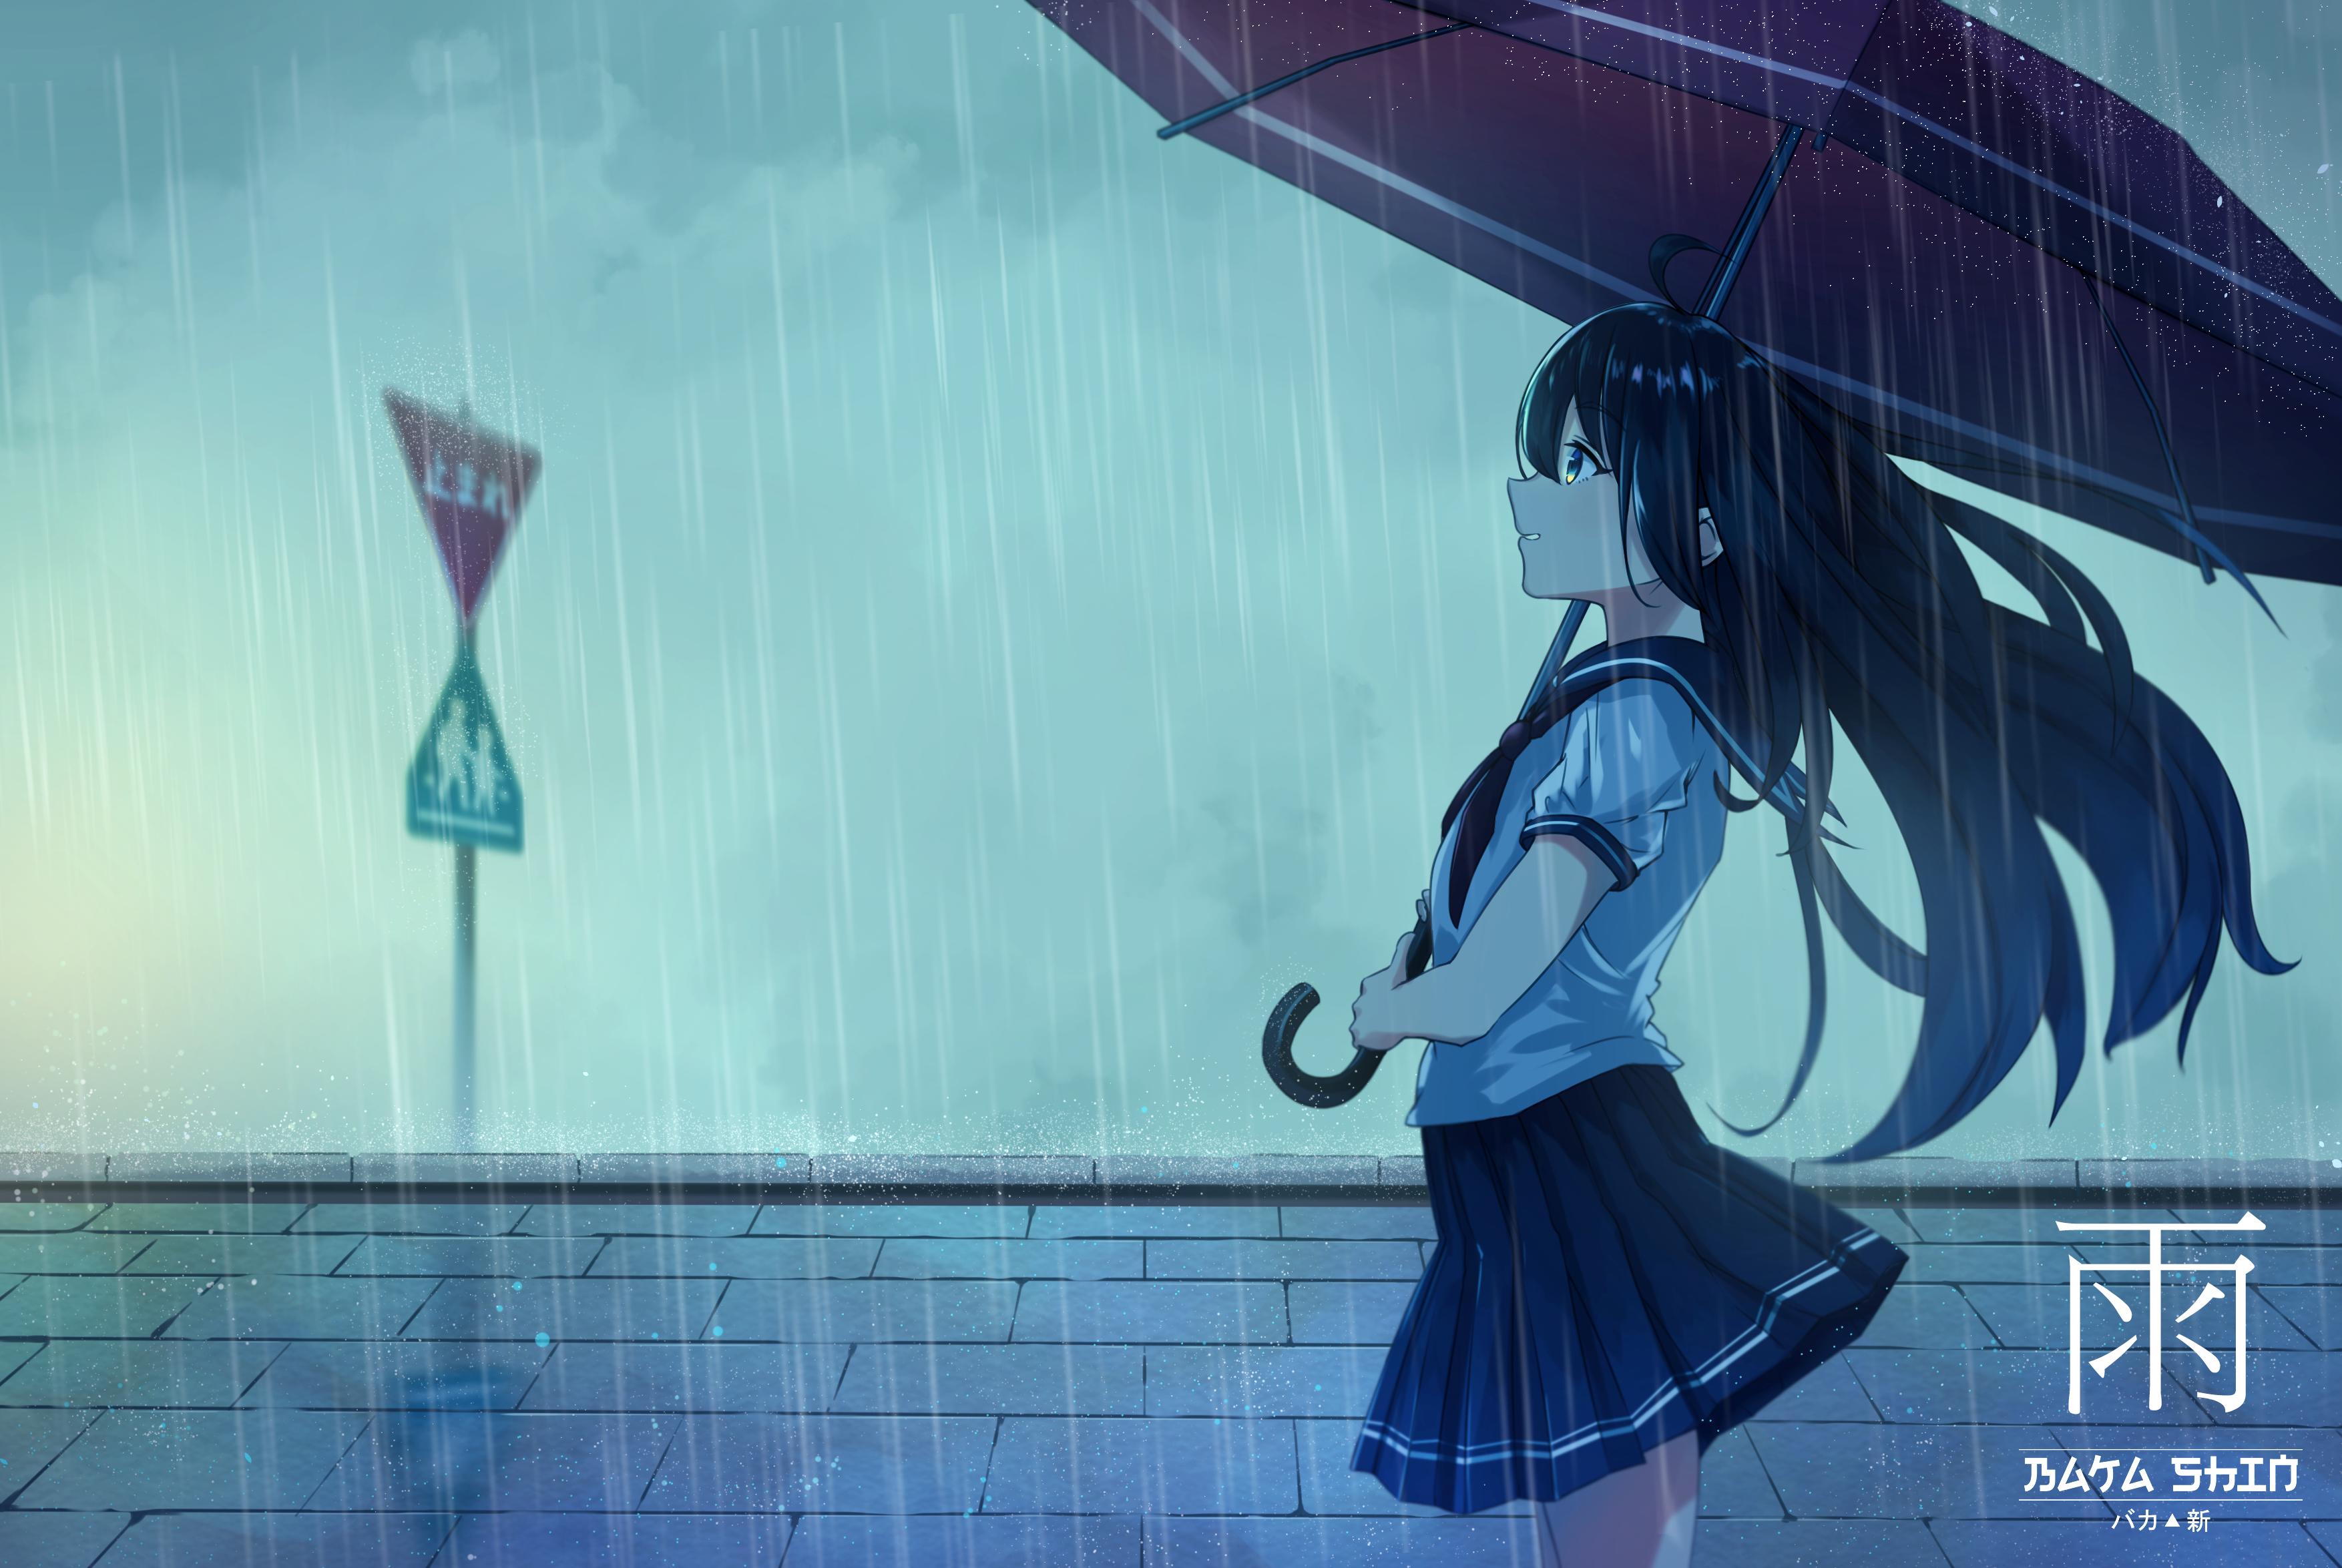 tapete anime keren,himmel,anime,karikatur,regen,regenschirm